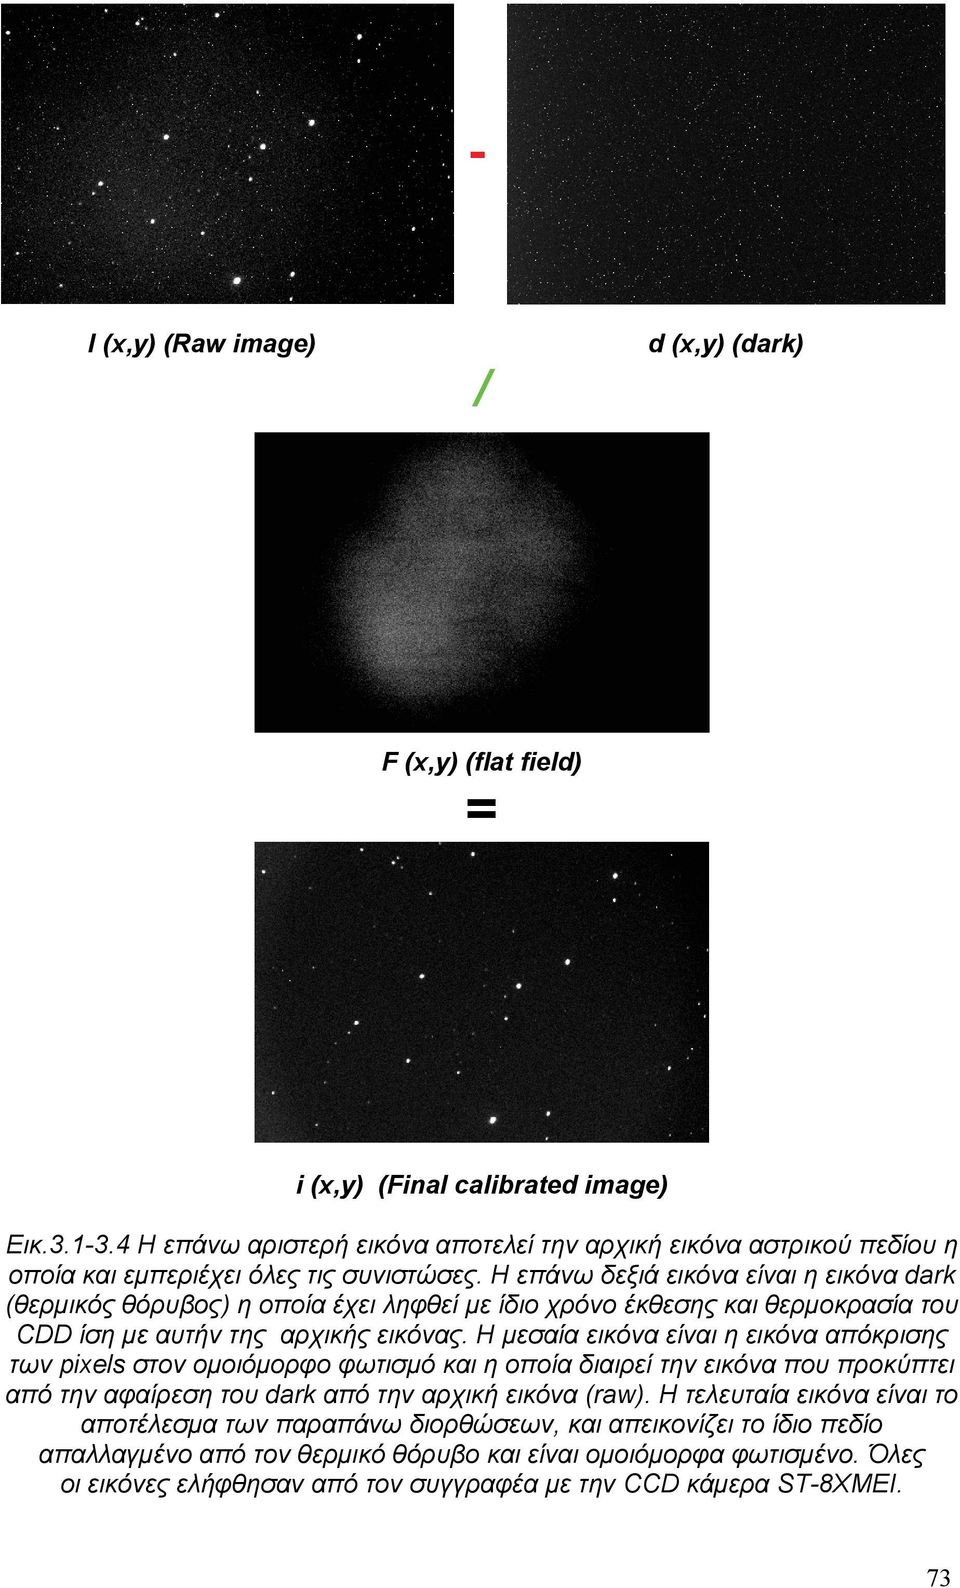 Η επάνω δεξιά εικόνα είναι η εικόνα dark (θερμικός θόρυβος) η οποία έχει ληφθεί με ίδιο χρόνο έκθεσης και θερμοκρασία του CDD ίση με αυτήν της αρχικής εικόνας.